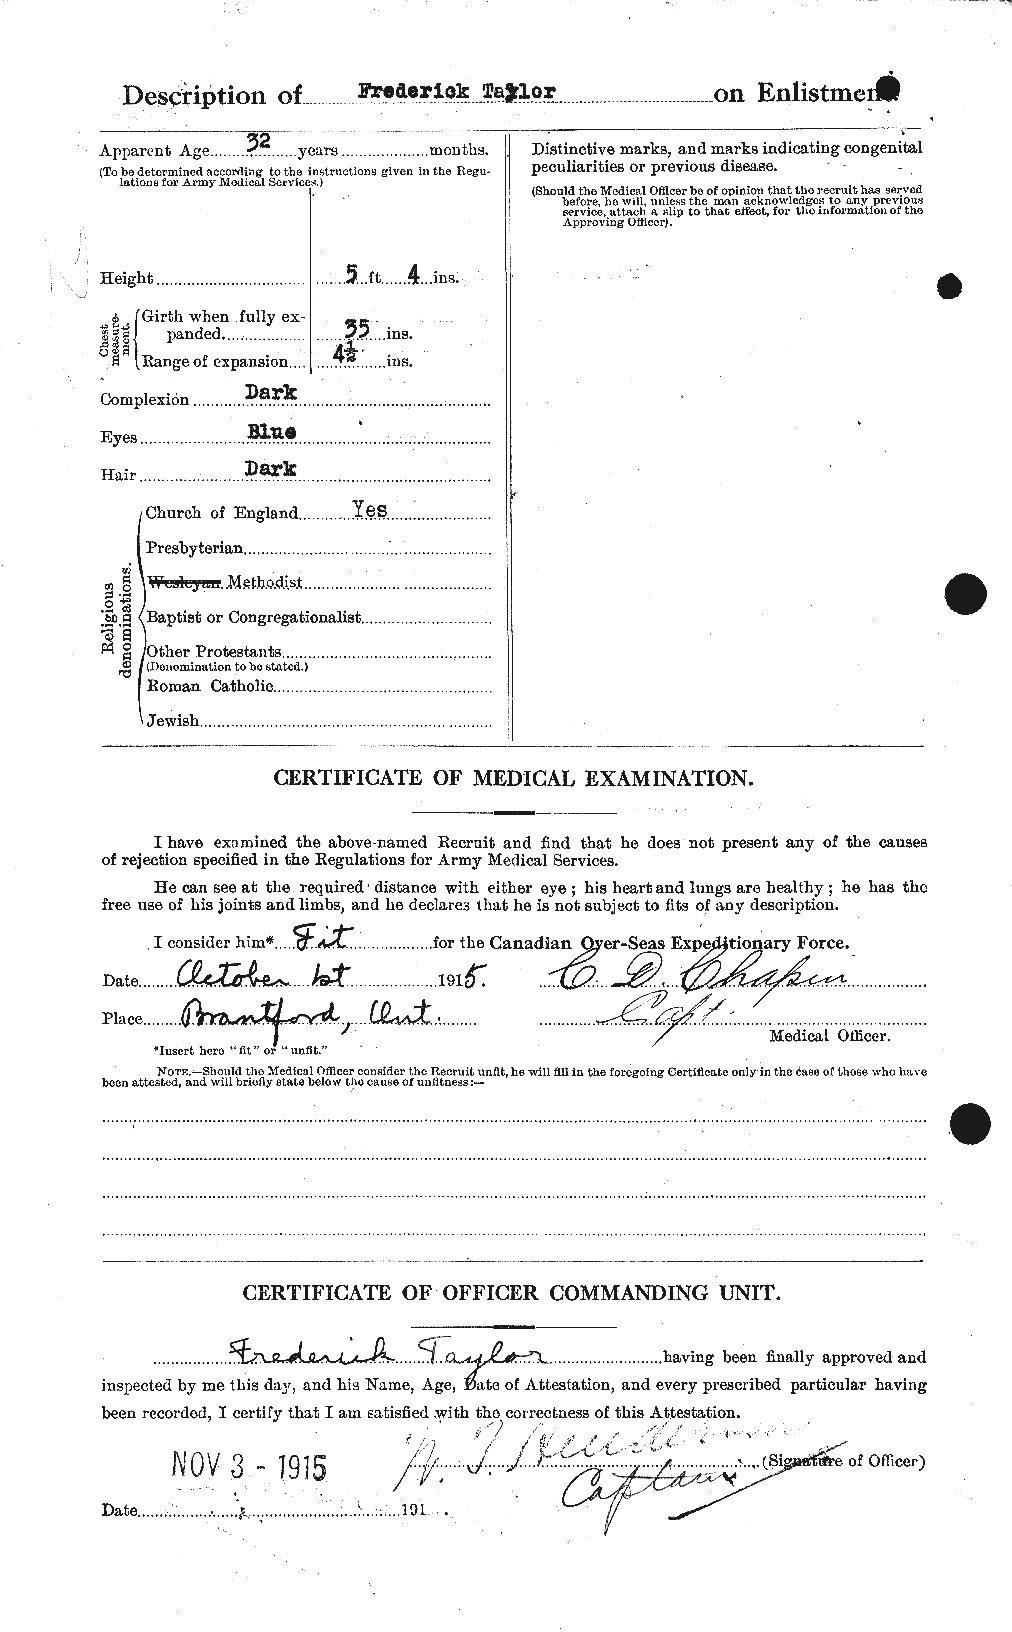 Dossiers du Personnel de la Première Guerre mondiale - CEC 625781b